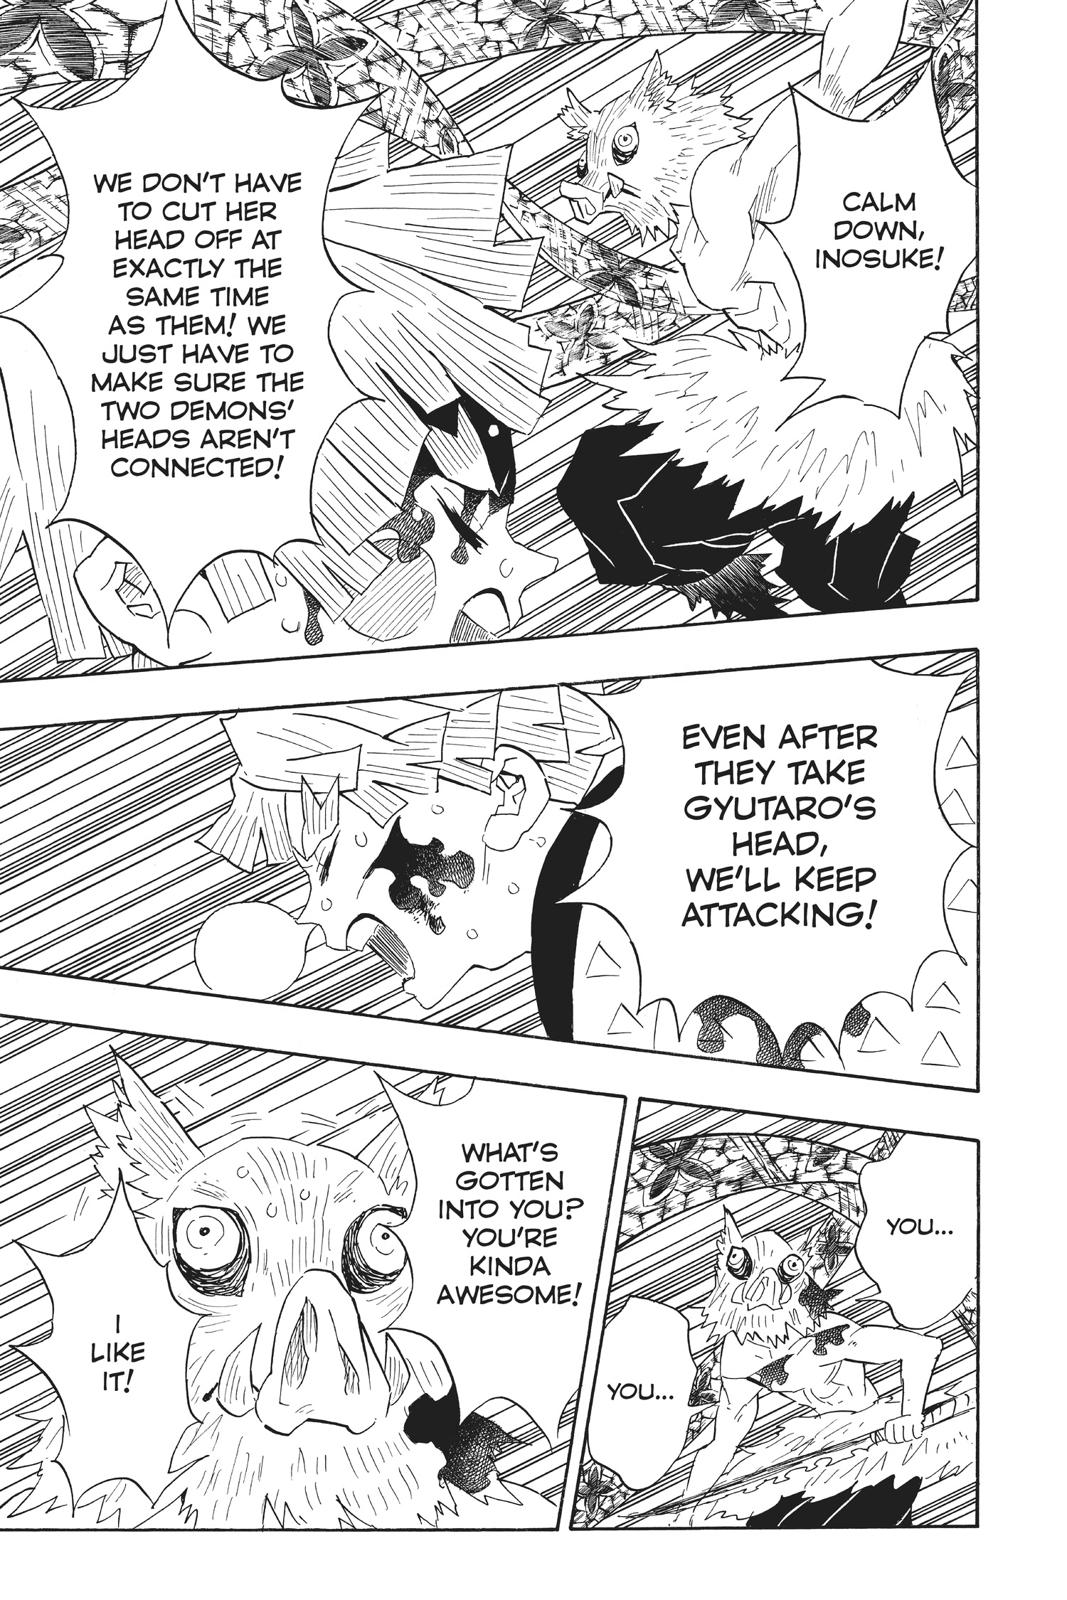 Demon Slayer Manga Manga Chapter - 91 - image 3